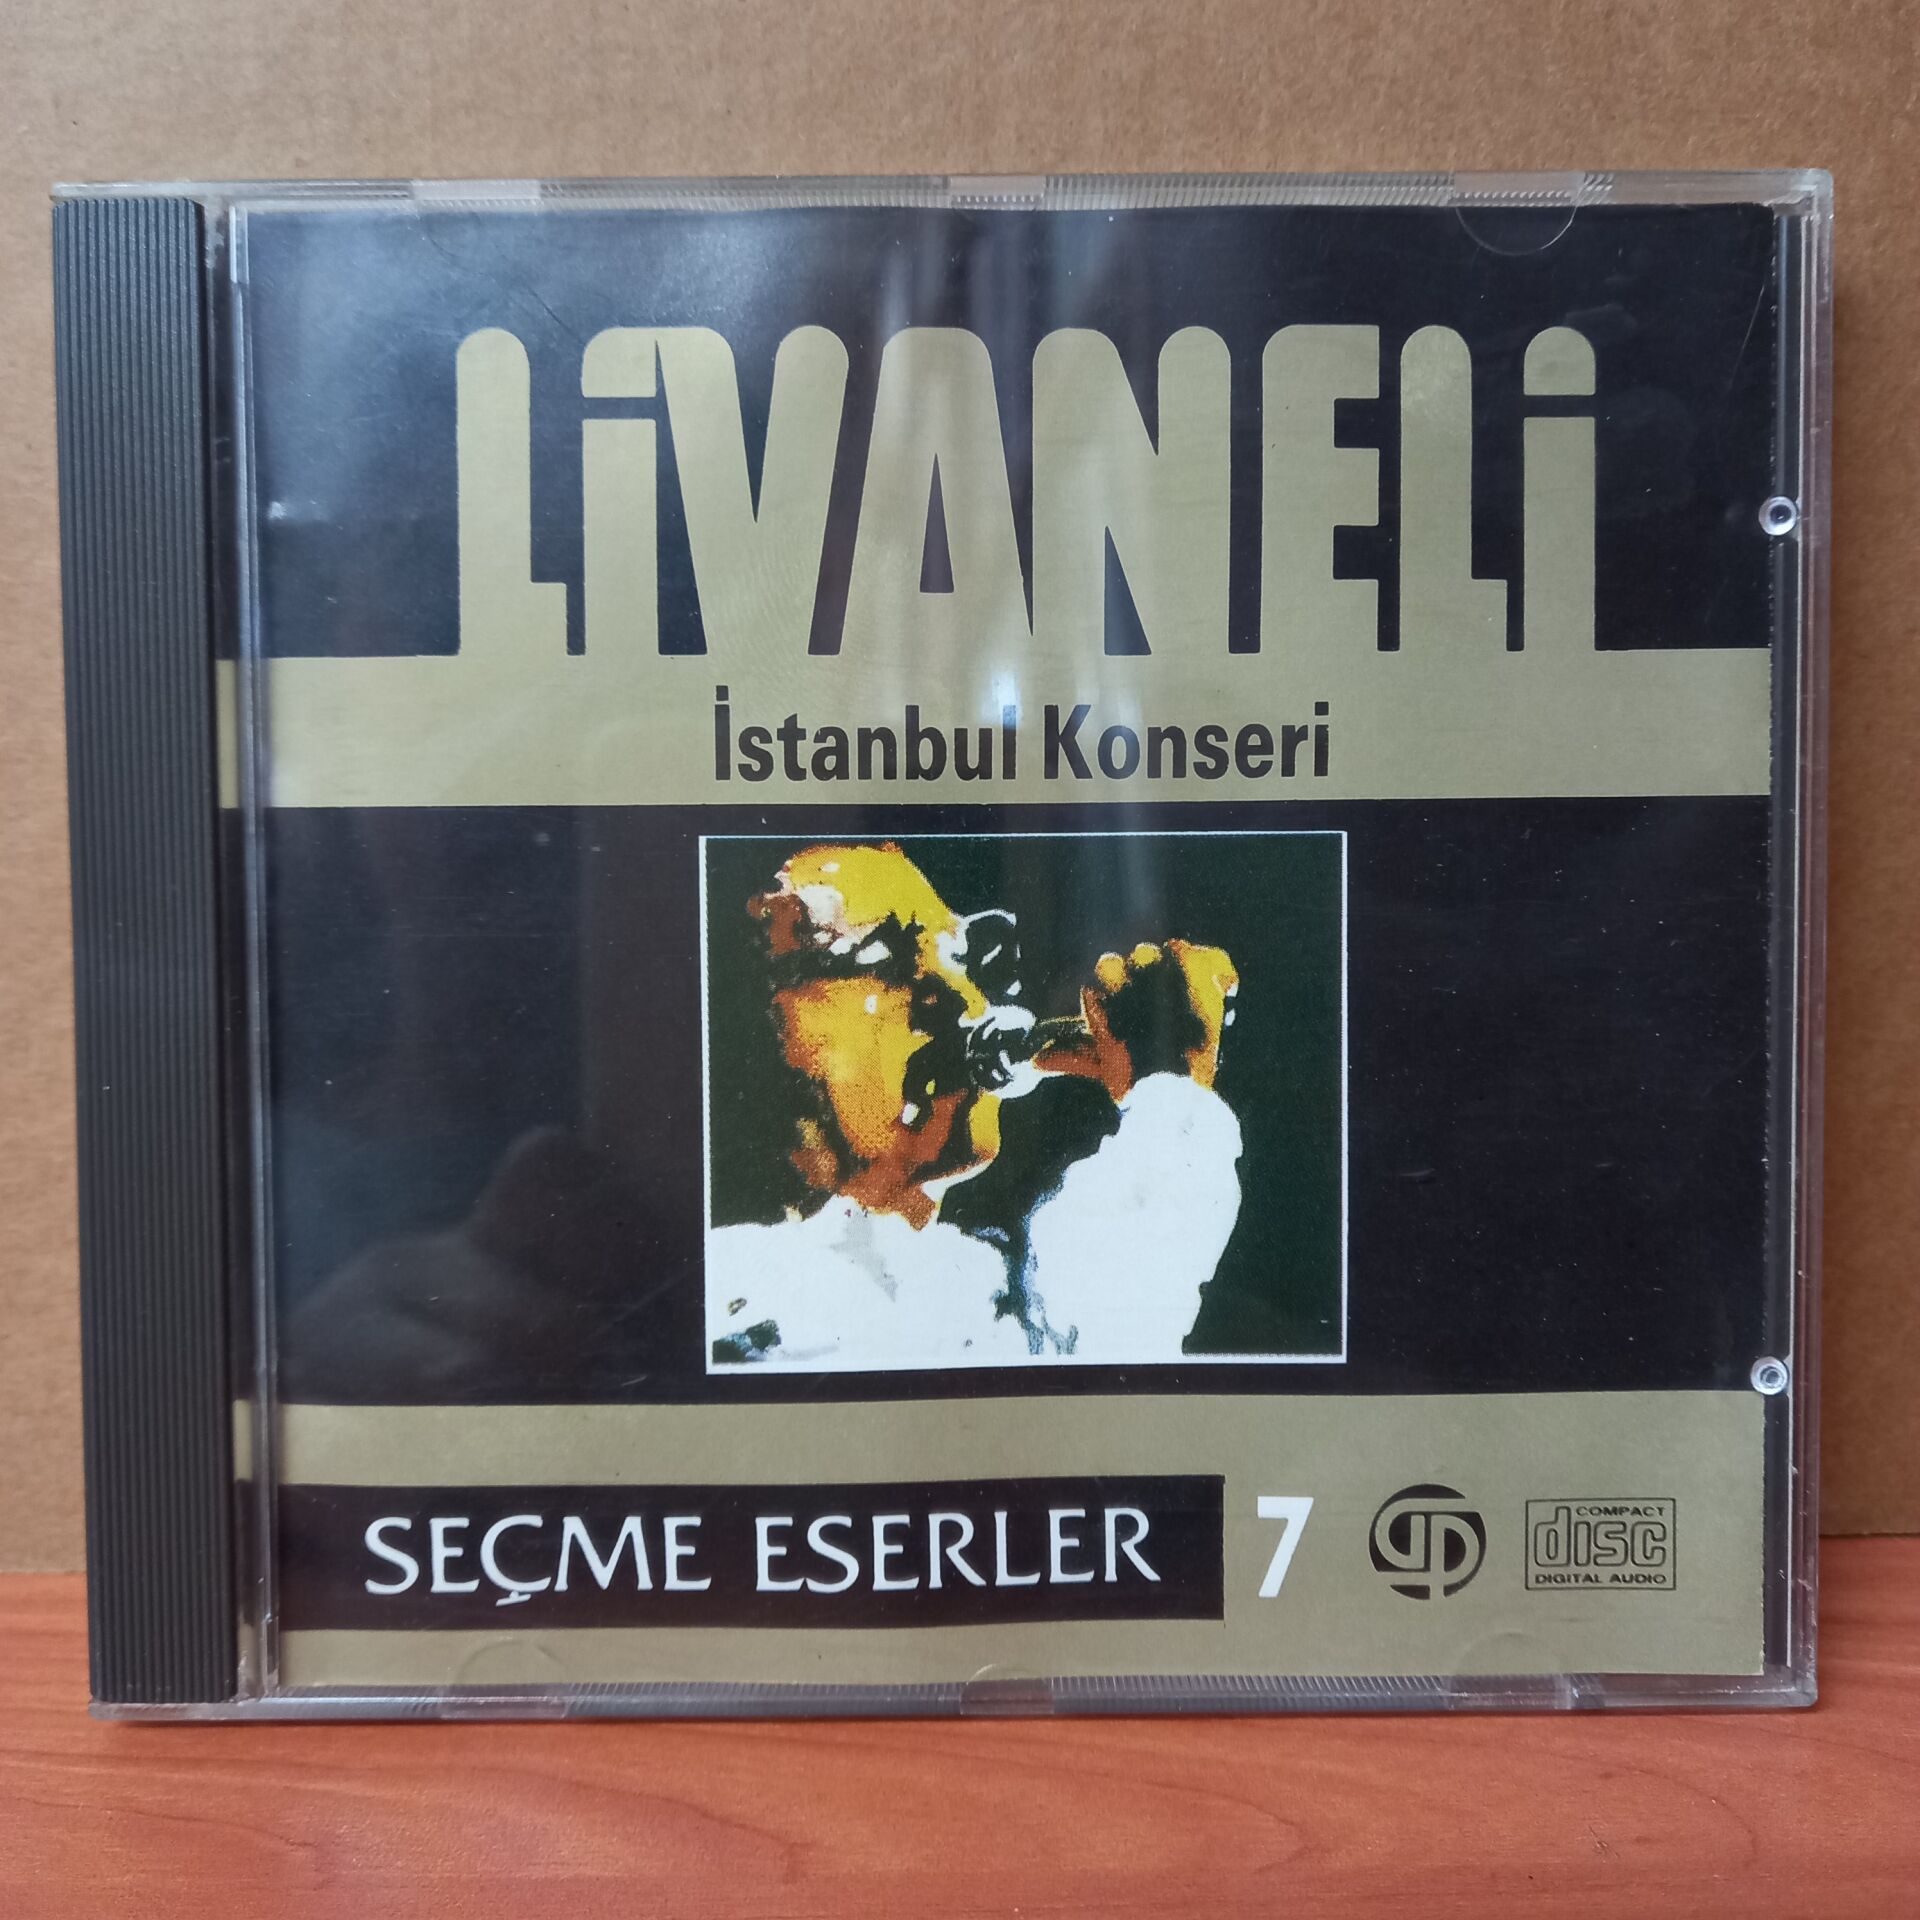 ZÜLFÜ LİVANELİ - İSTANBUL KONSERİ / SEÇME ESERLER 7 (1990) - CD 2.EL